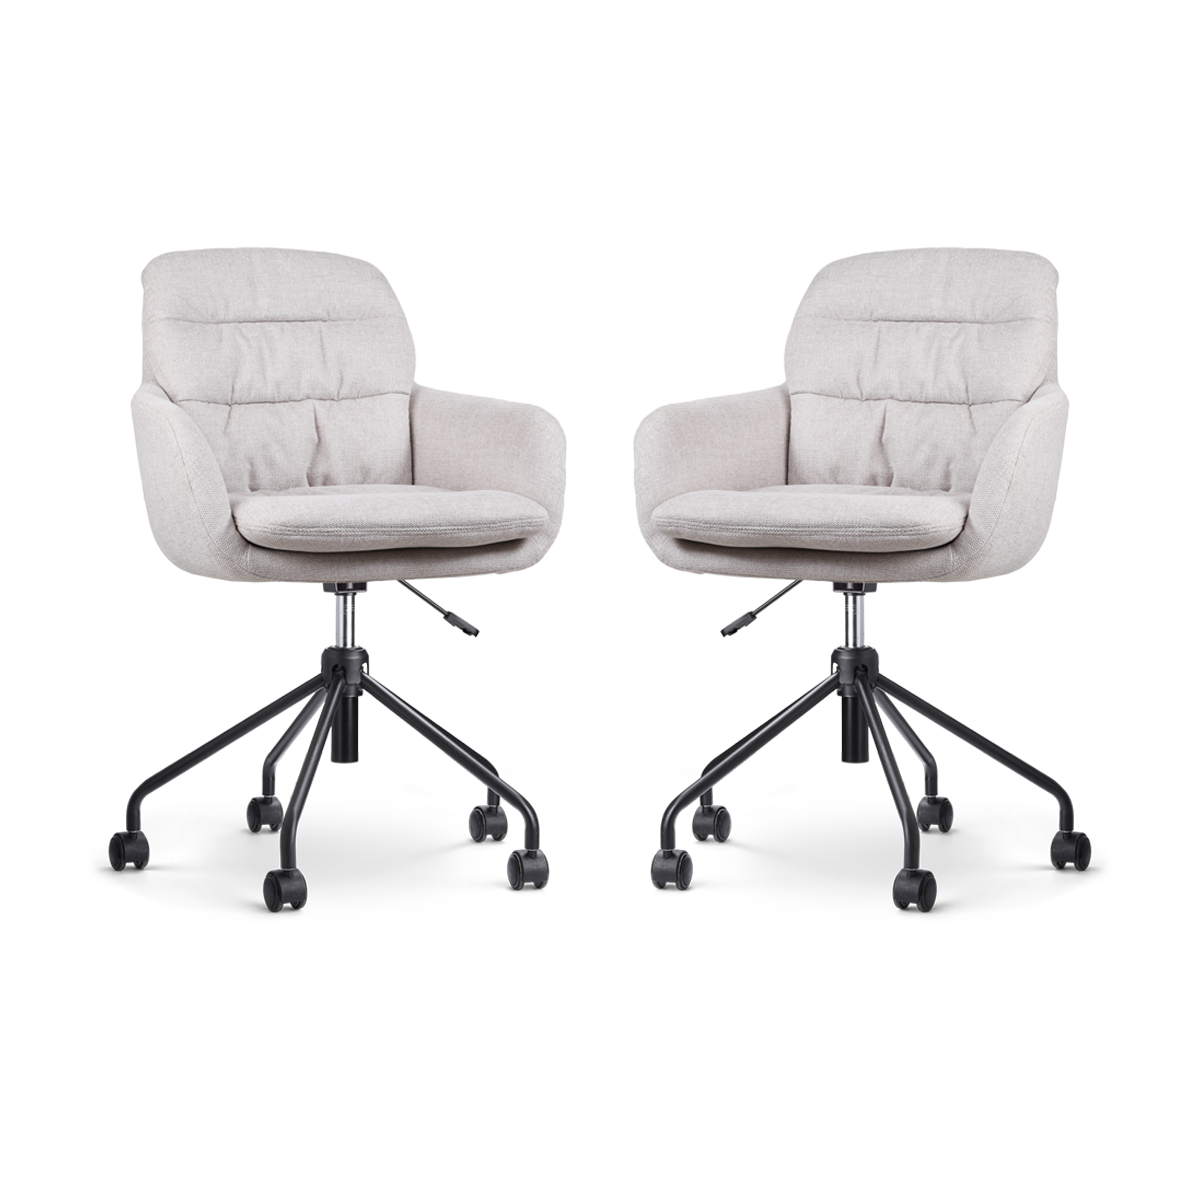 Nout-Mia bureaustoel beige - zwart onderstel - set van 2